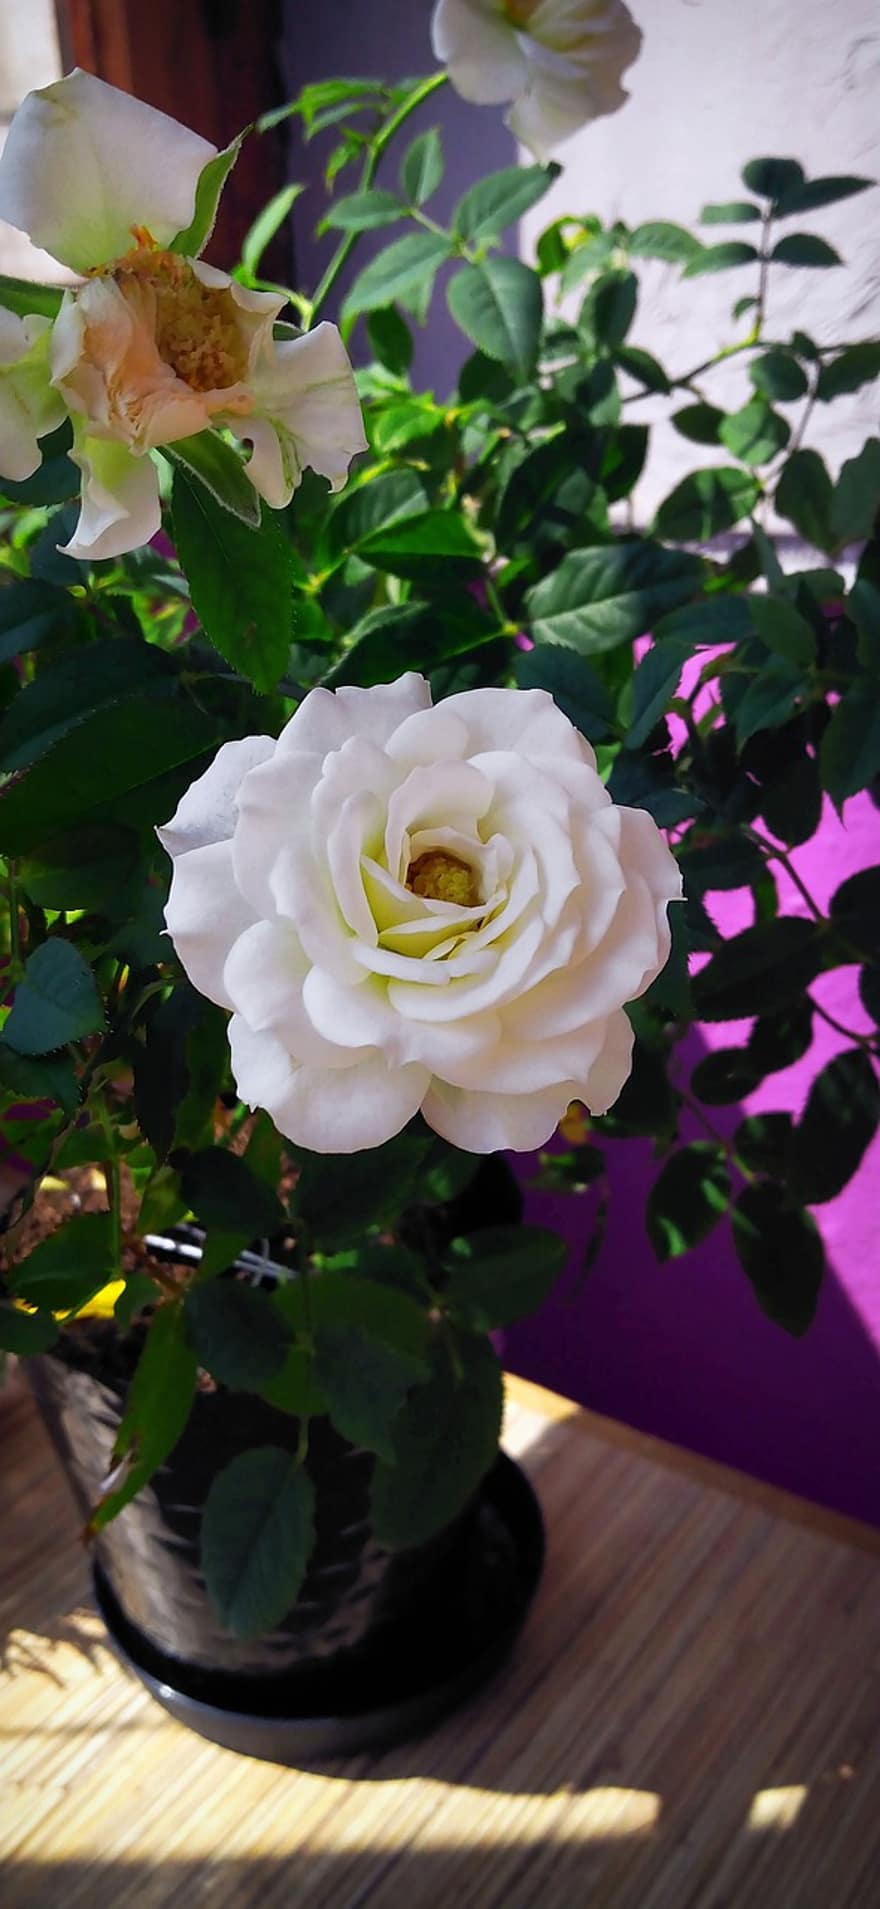 rózsa, fehér rózsa, virágok, fehér, virágszirom, fehér virág, rózsabokor